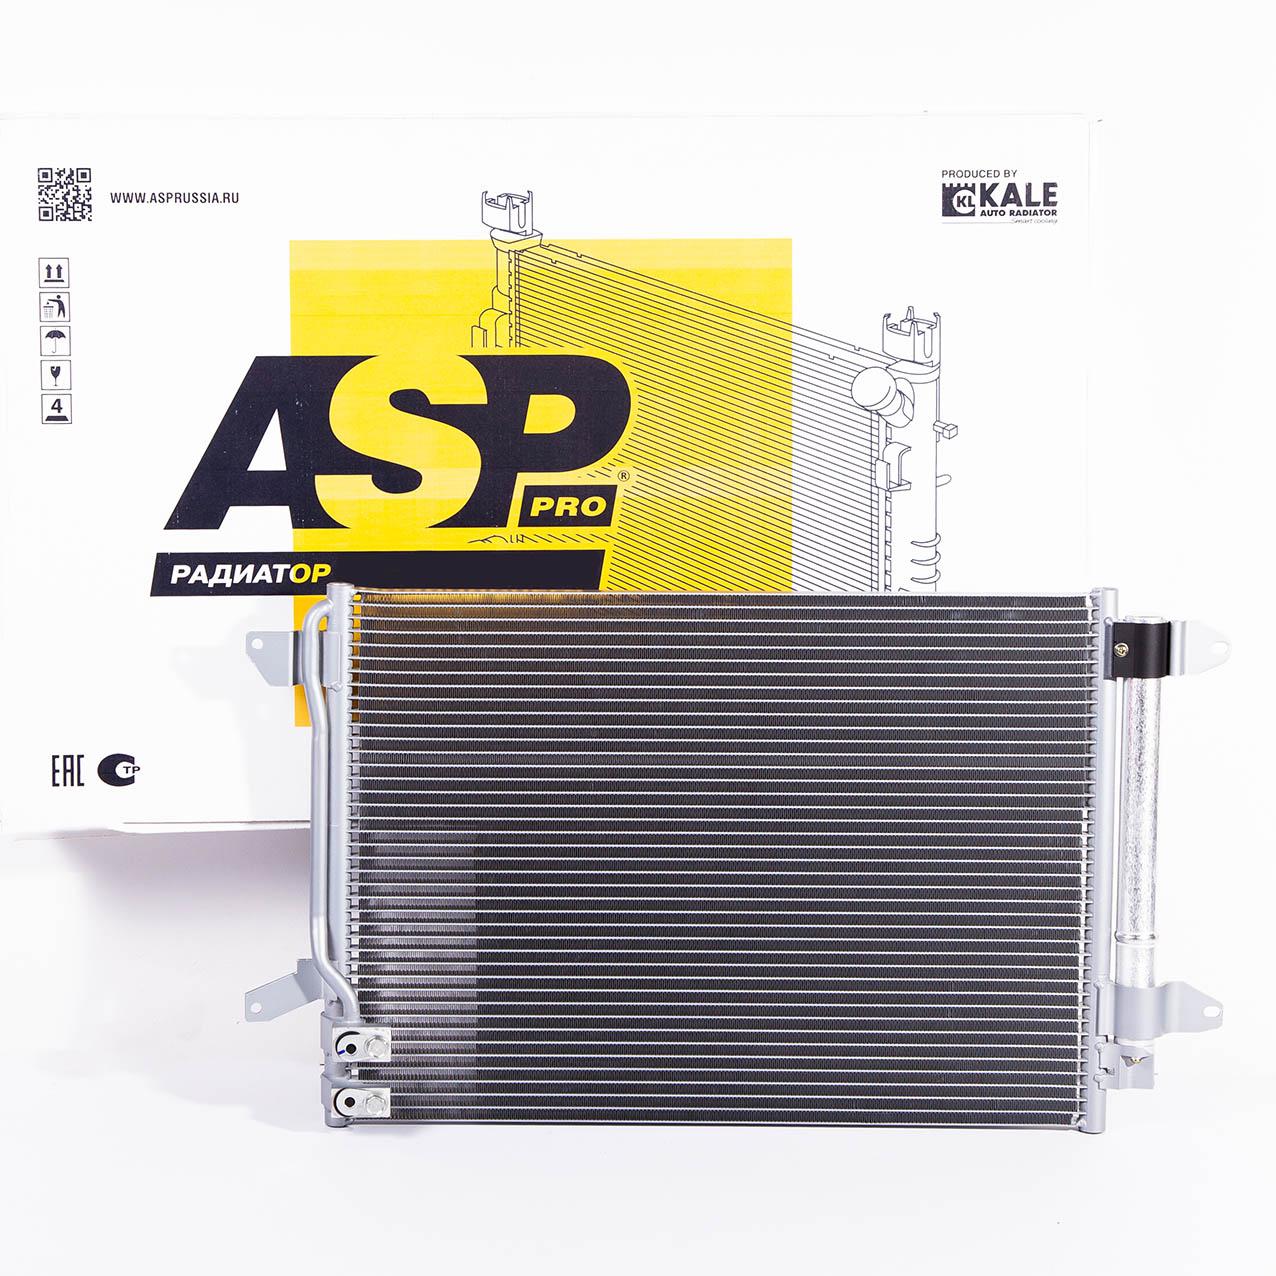 ASP AL60142 Радиатор кондиционера  1шт